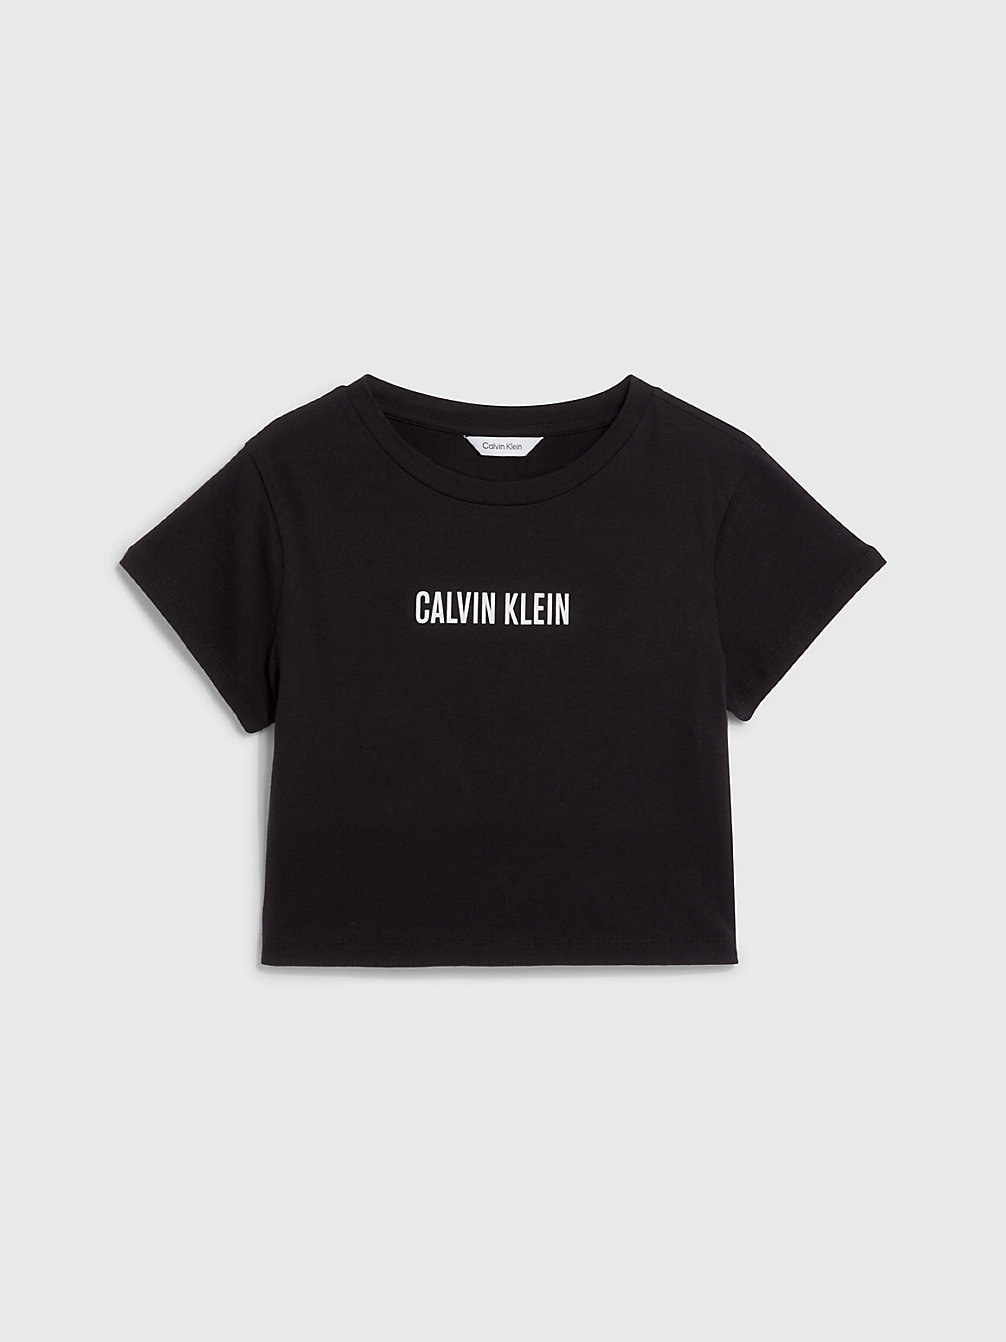 PVH BLACK > Dziewczęcy T-Shirt Plażowy O Krótkim Fasonie - Intense Power > undefined girls - Calvin Klein